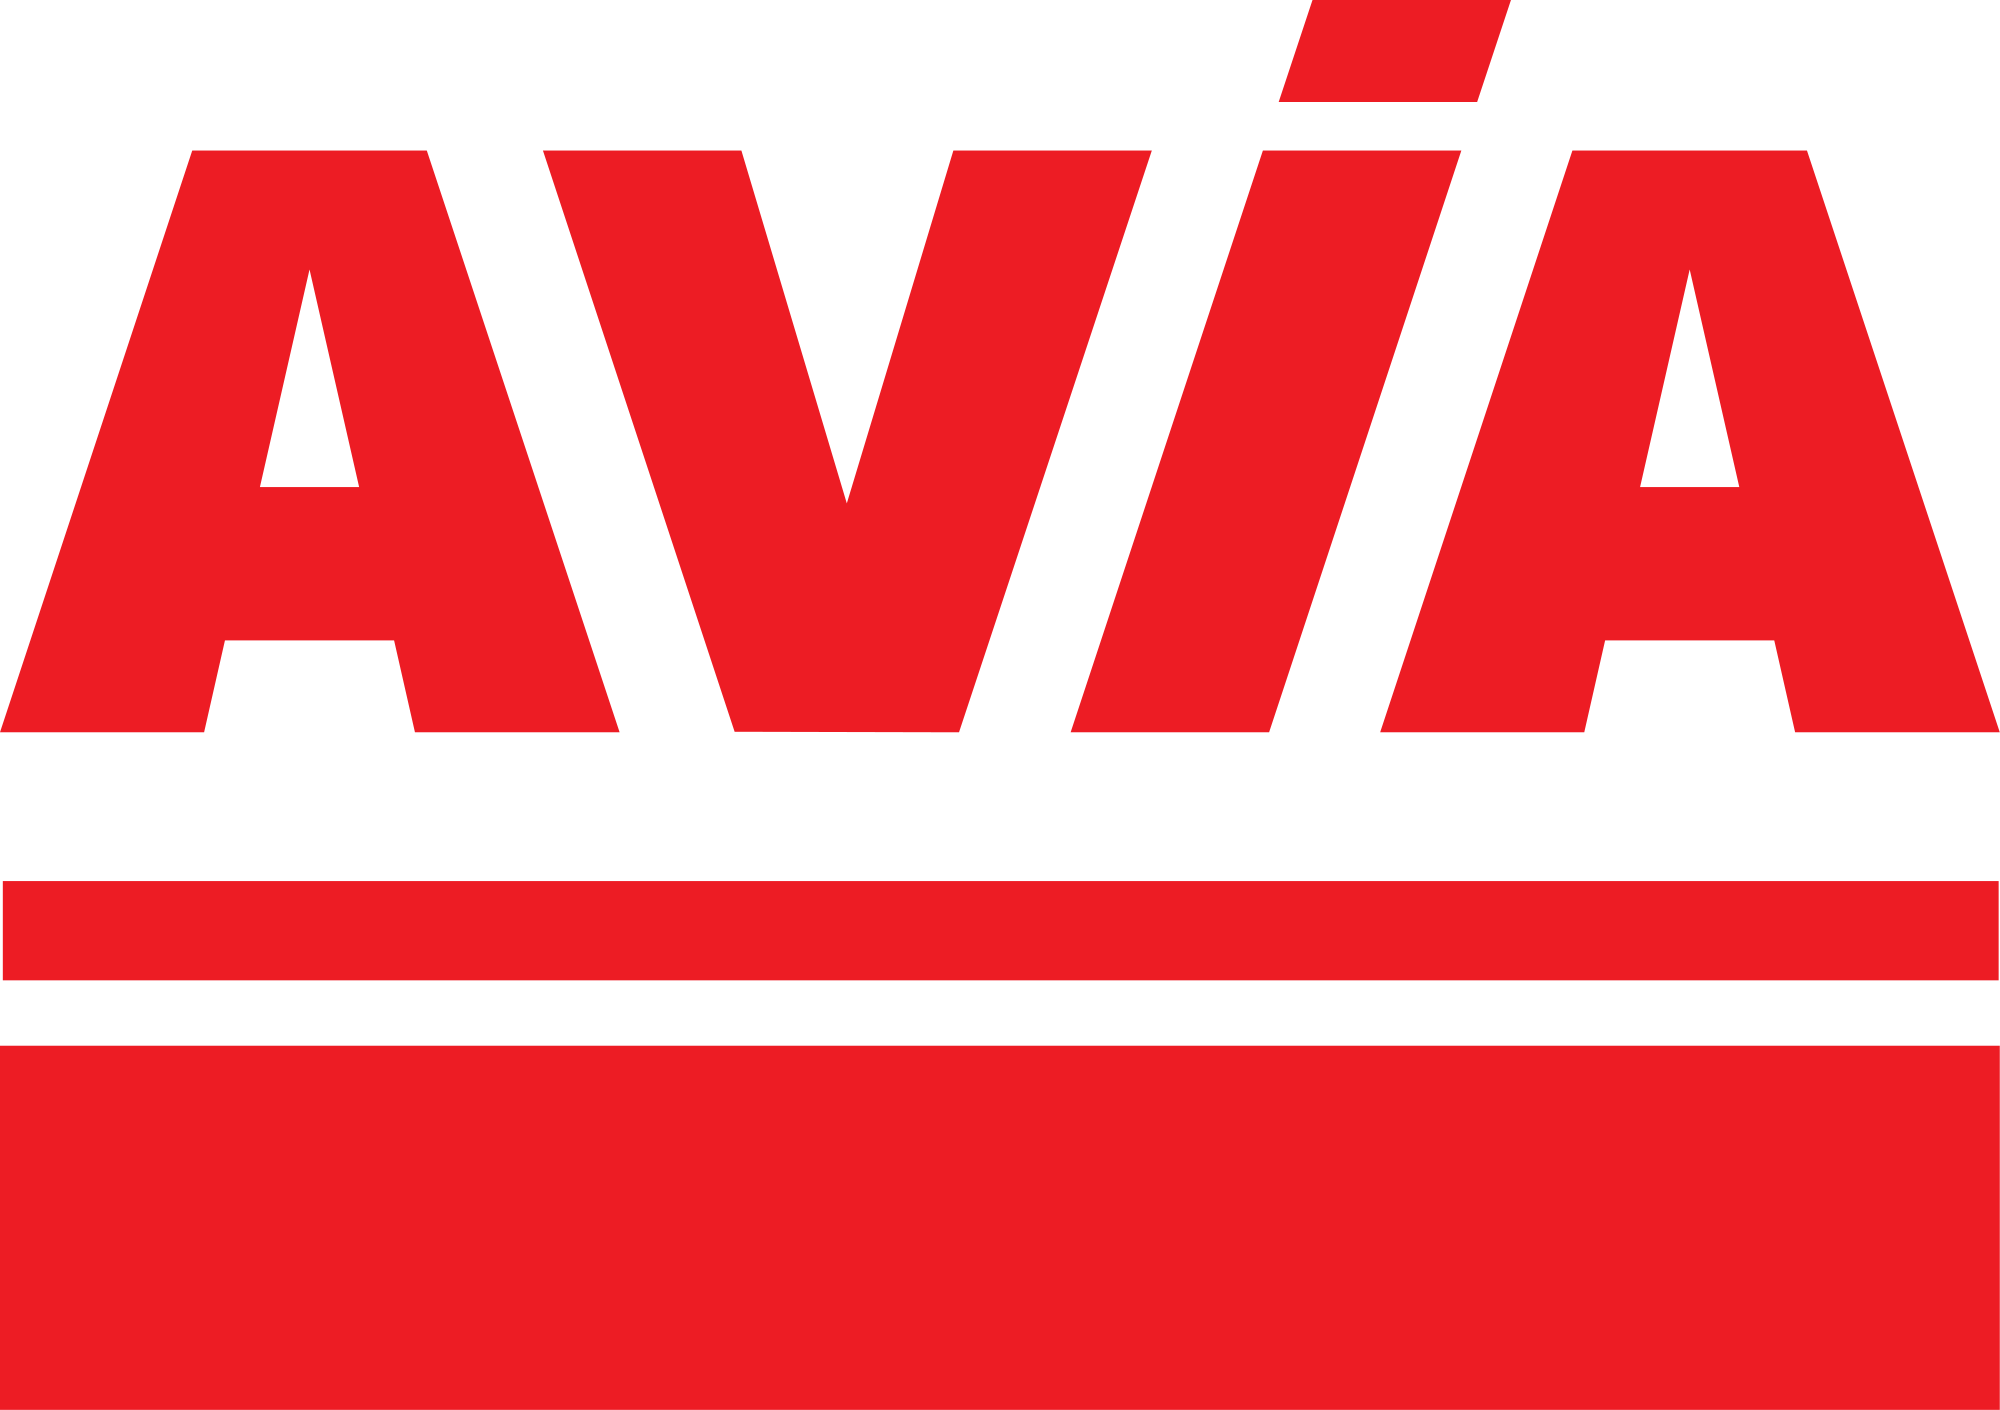 Logo avia vzw de steiger